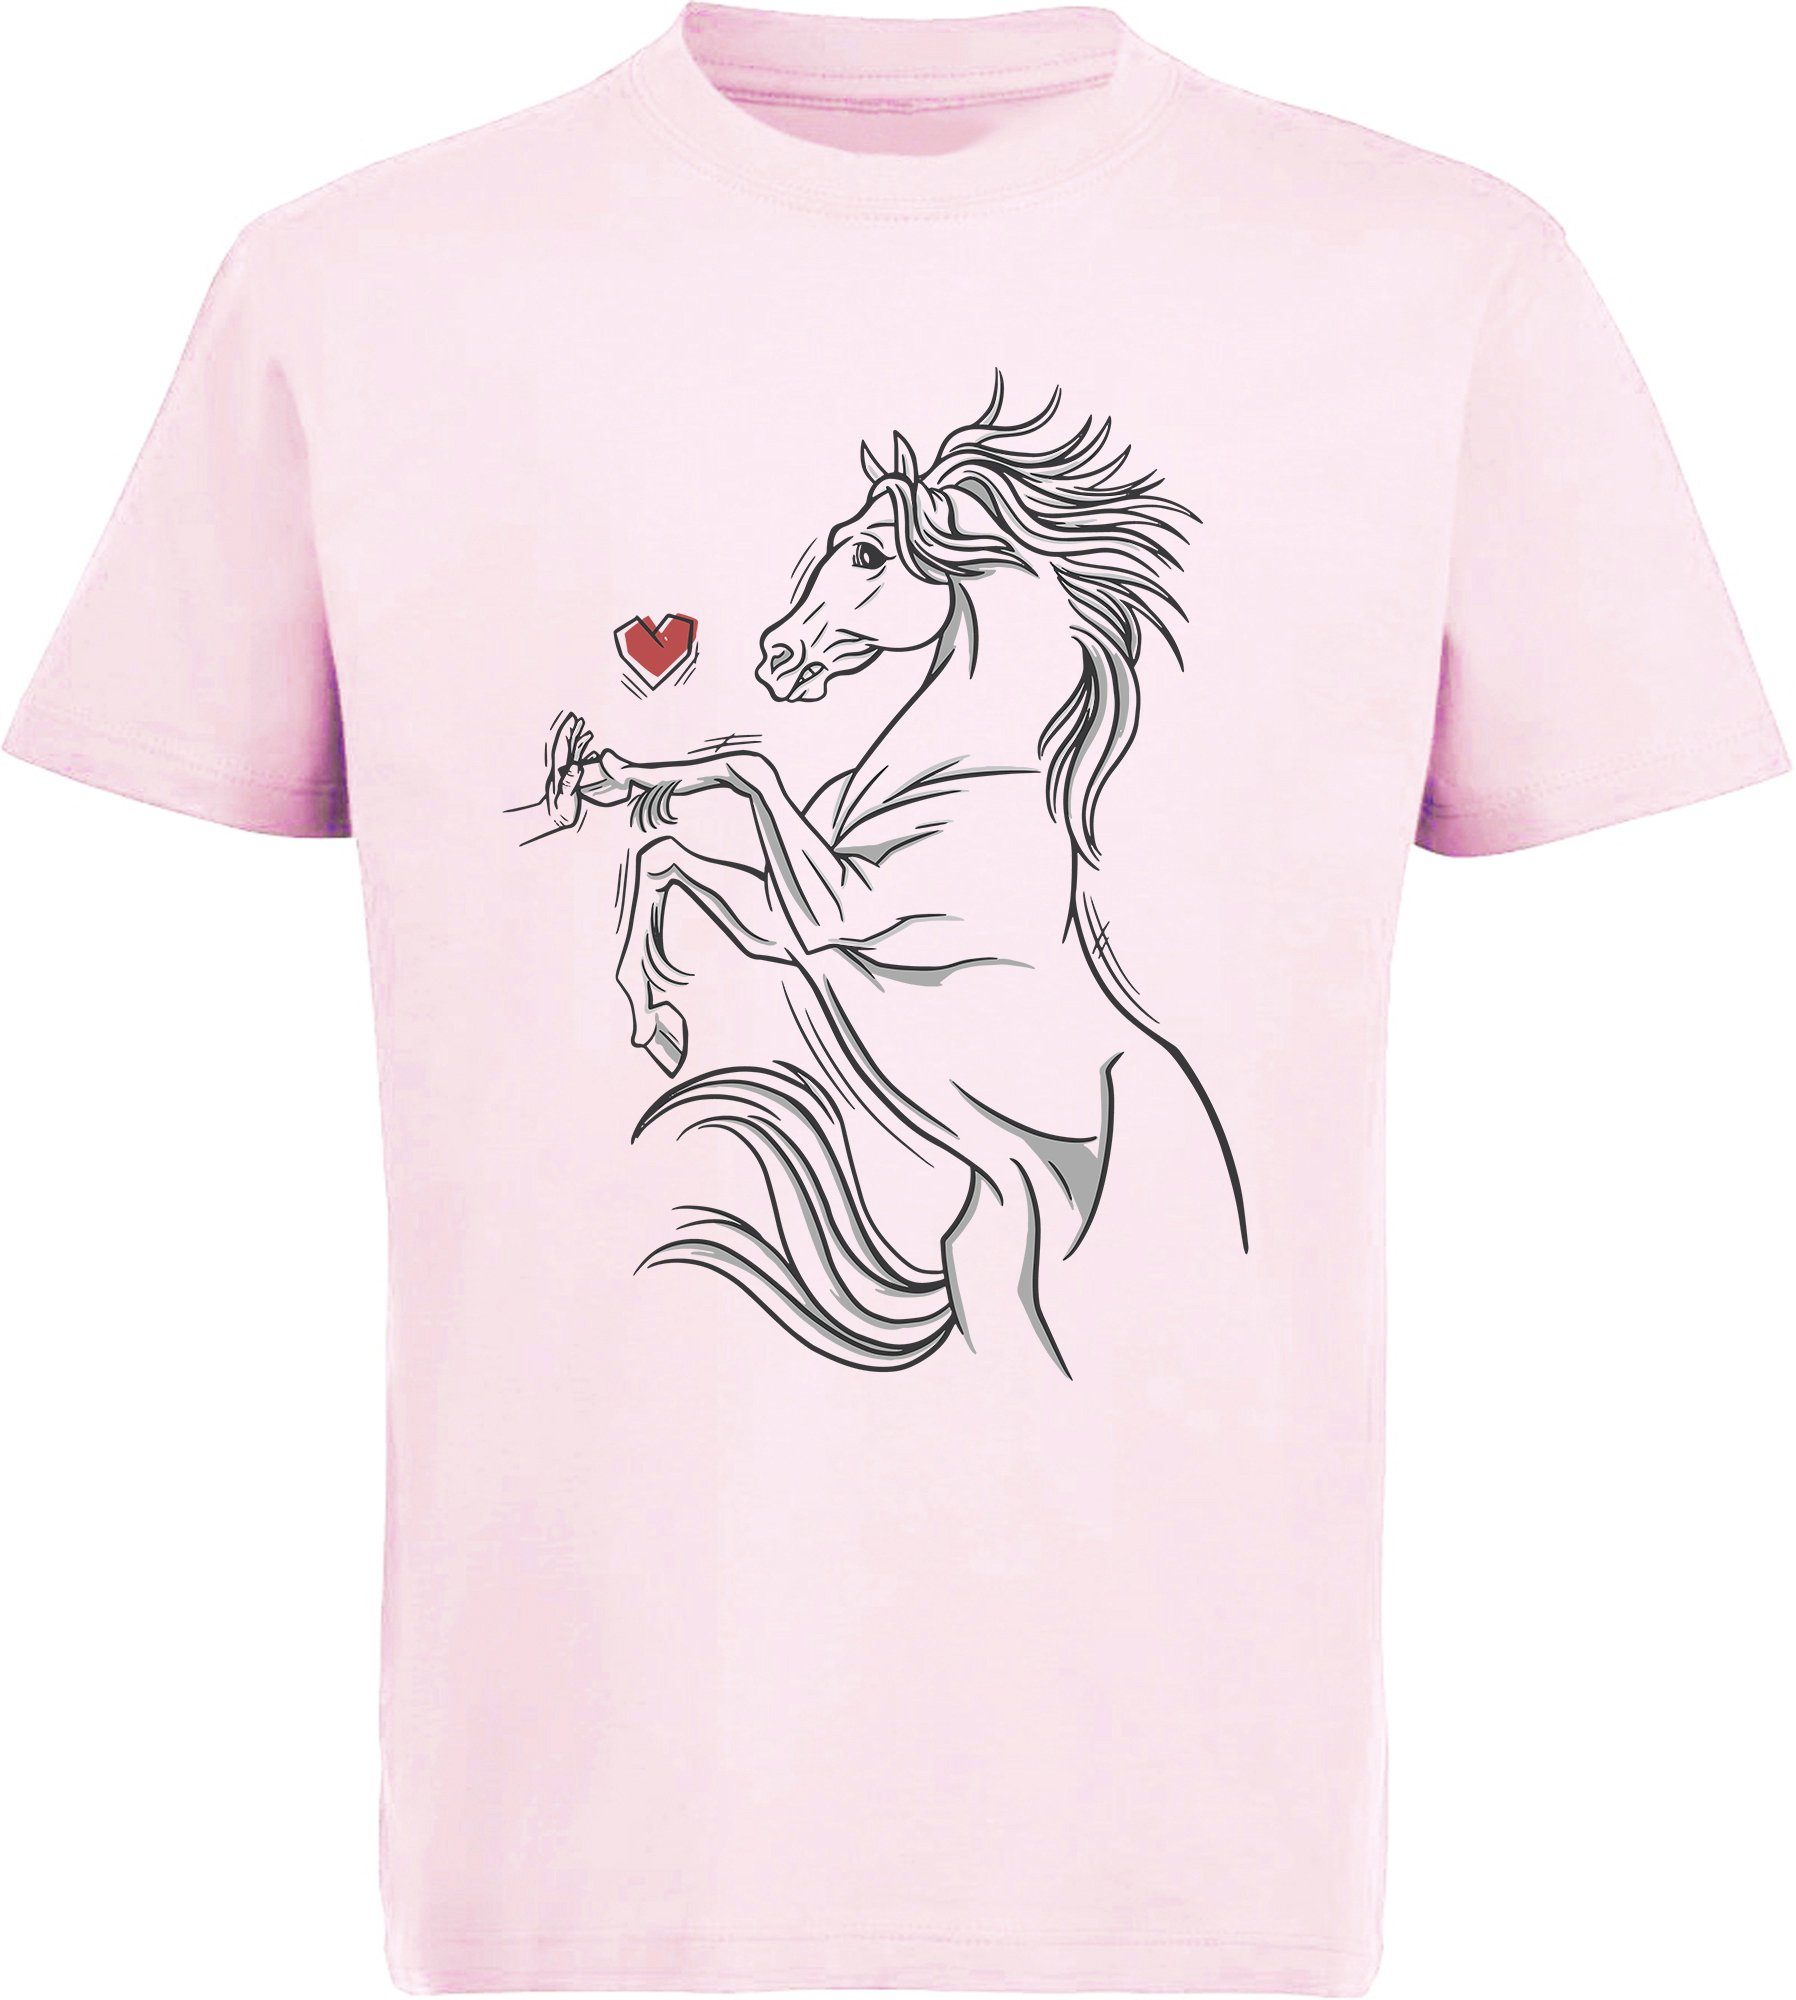 MyDesign24 Print-Shirt Aufdruck, T-Shirt eine das Hand Pferd i159 Baumwollshirt rosa bedrucktes berührt mit Mädchen